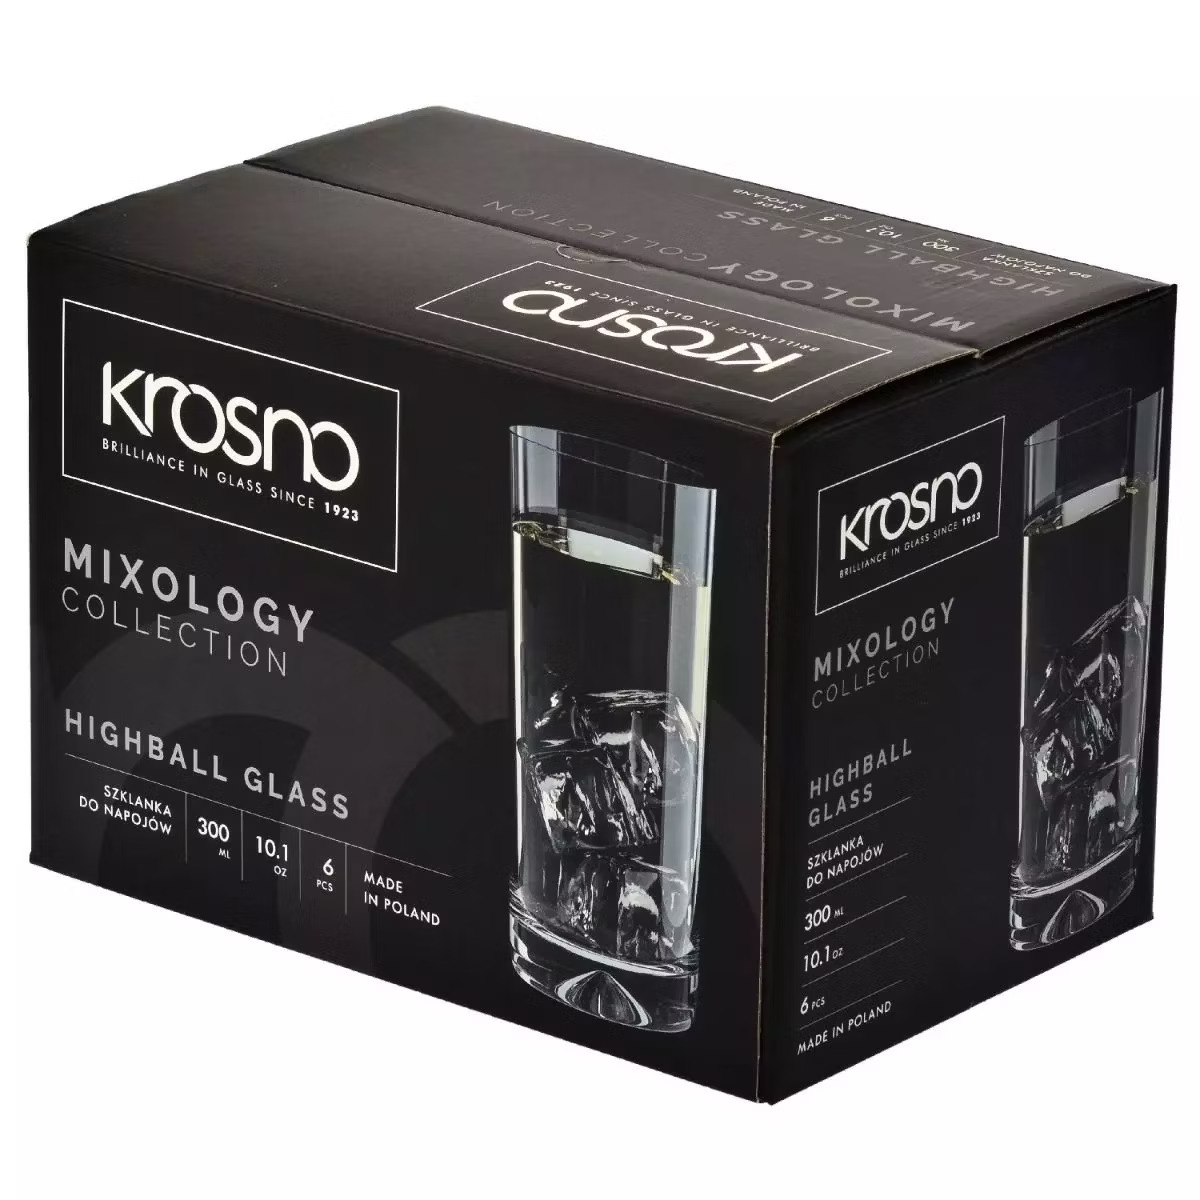 Набор высоких стаканов Krosno Mixology, стекло, 300 мл, 6 шт. (898926) - фото 3